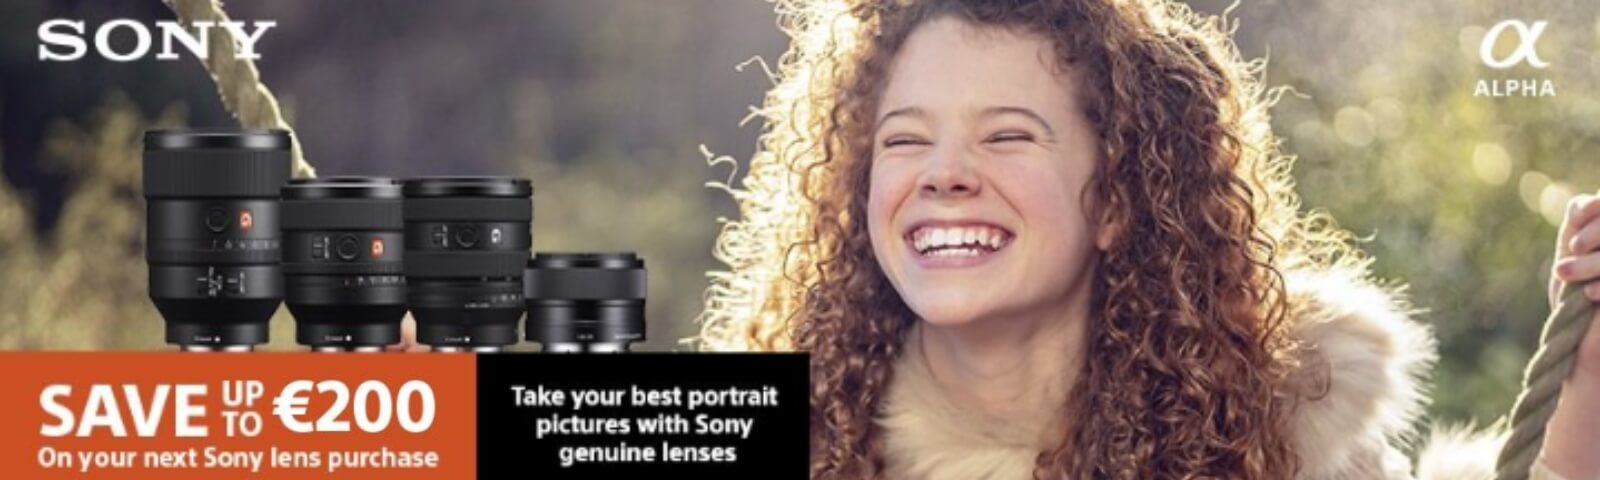 Sony Portrait Lens Promotion